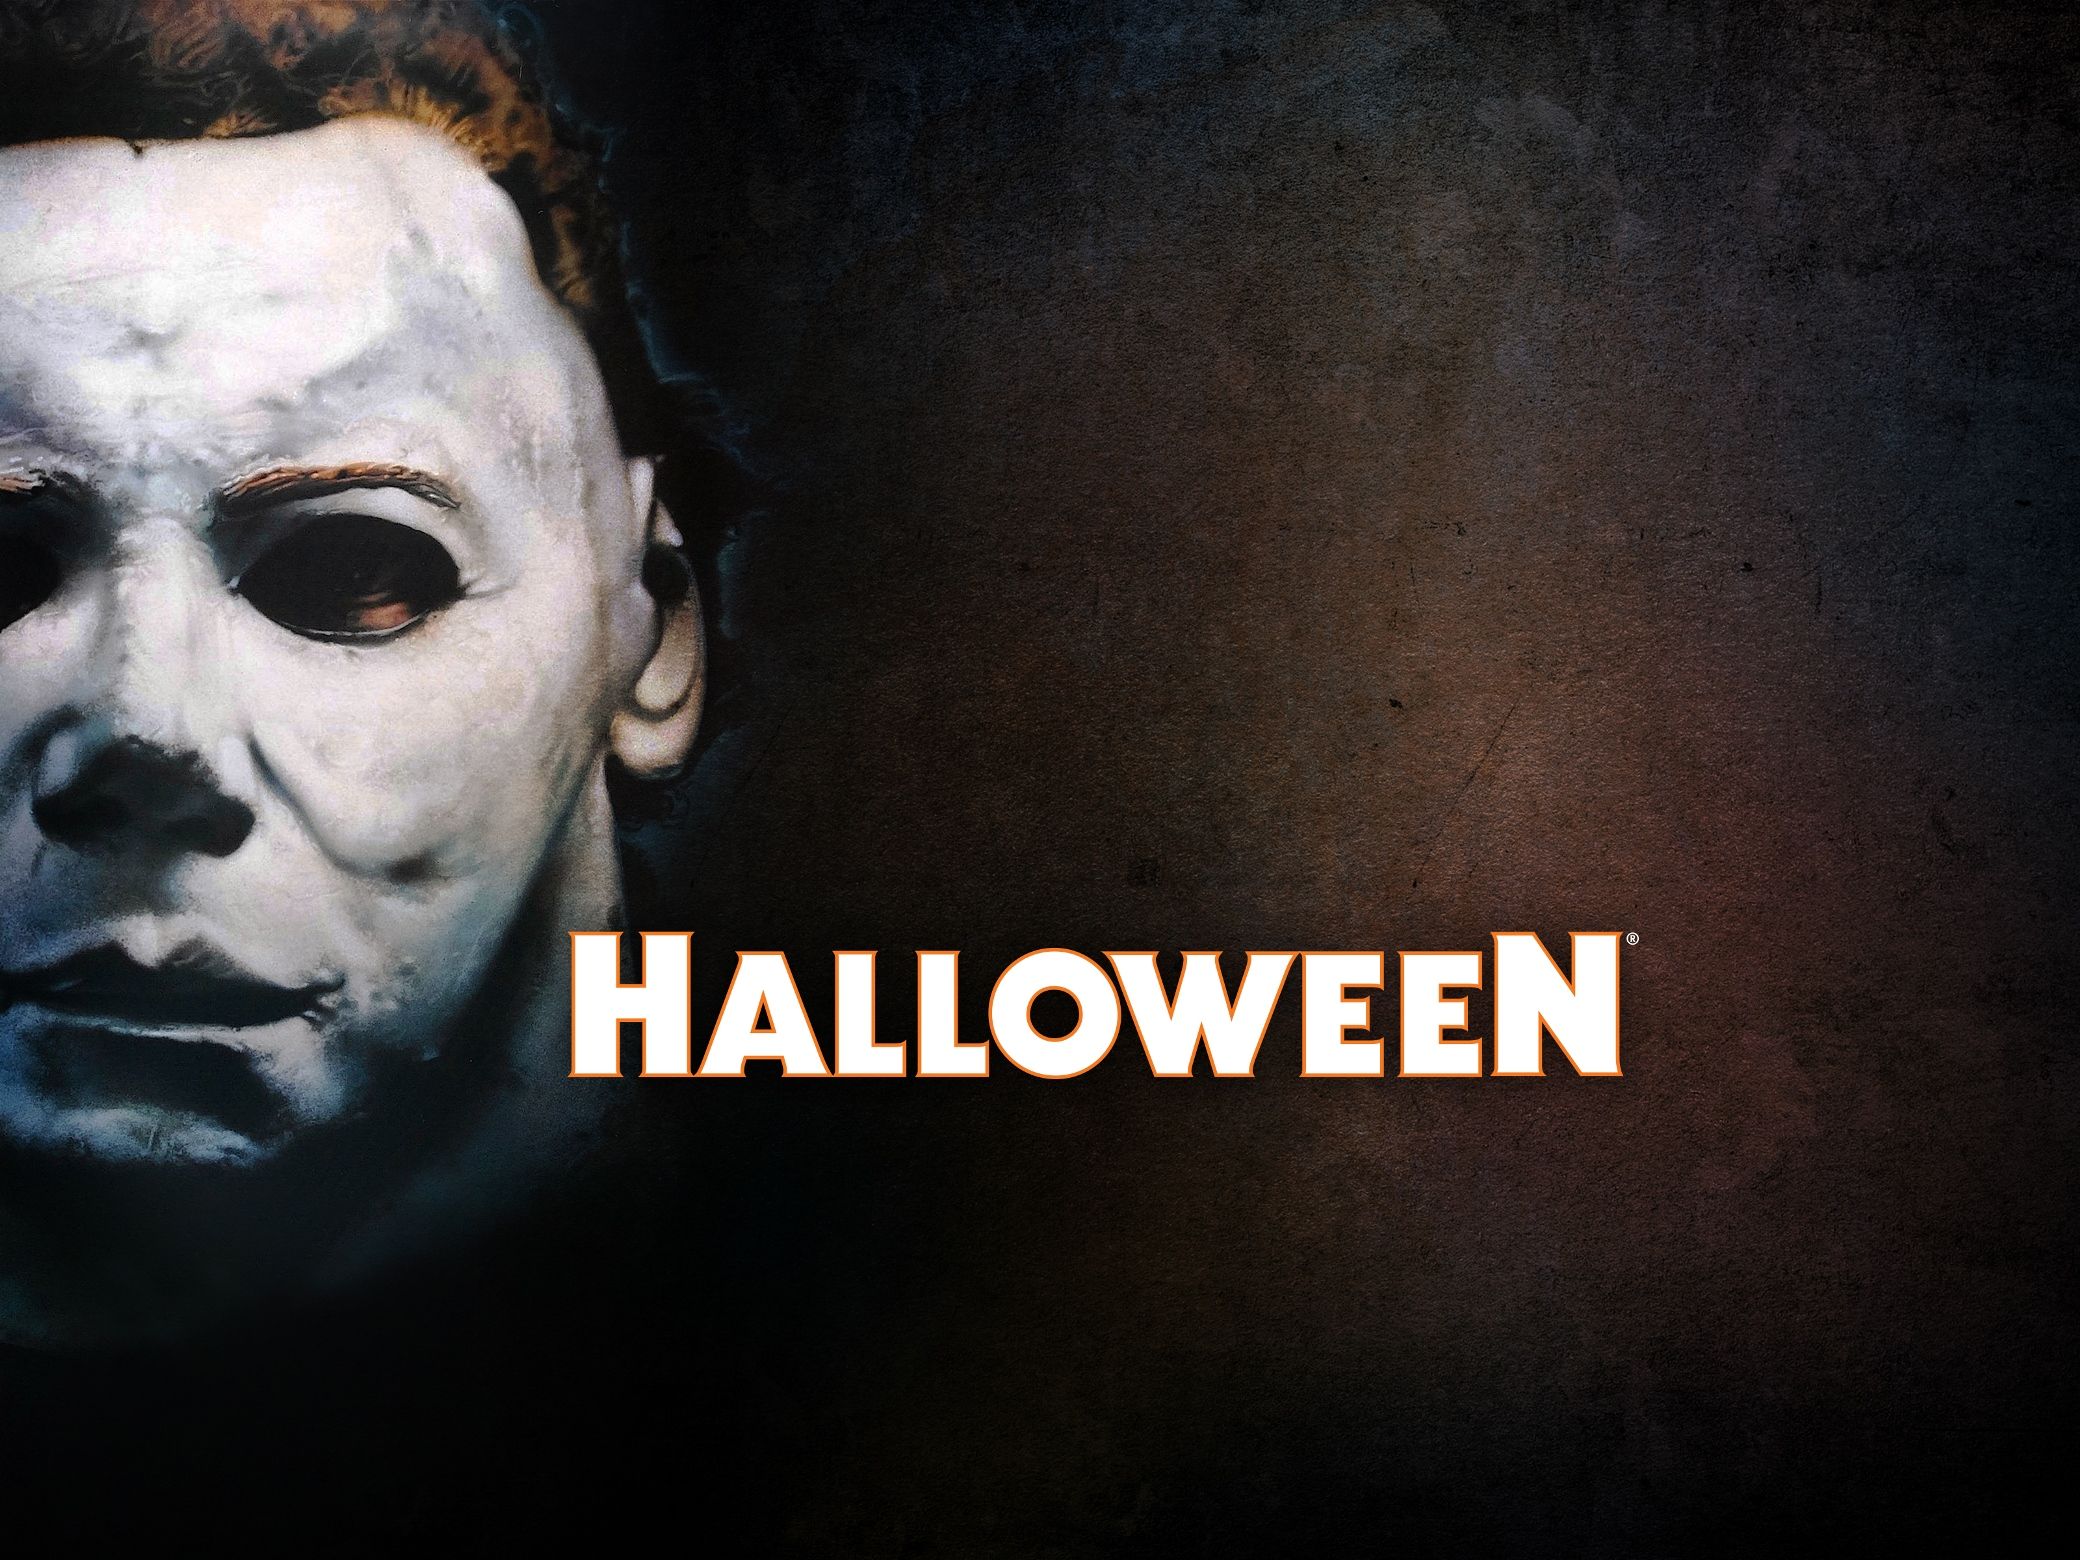 Halloween Universal Studios Halloween Horror Nights